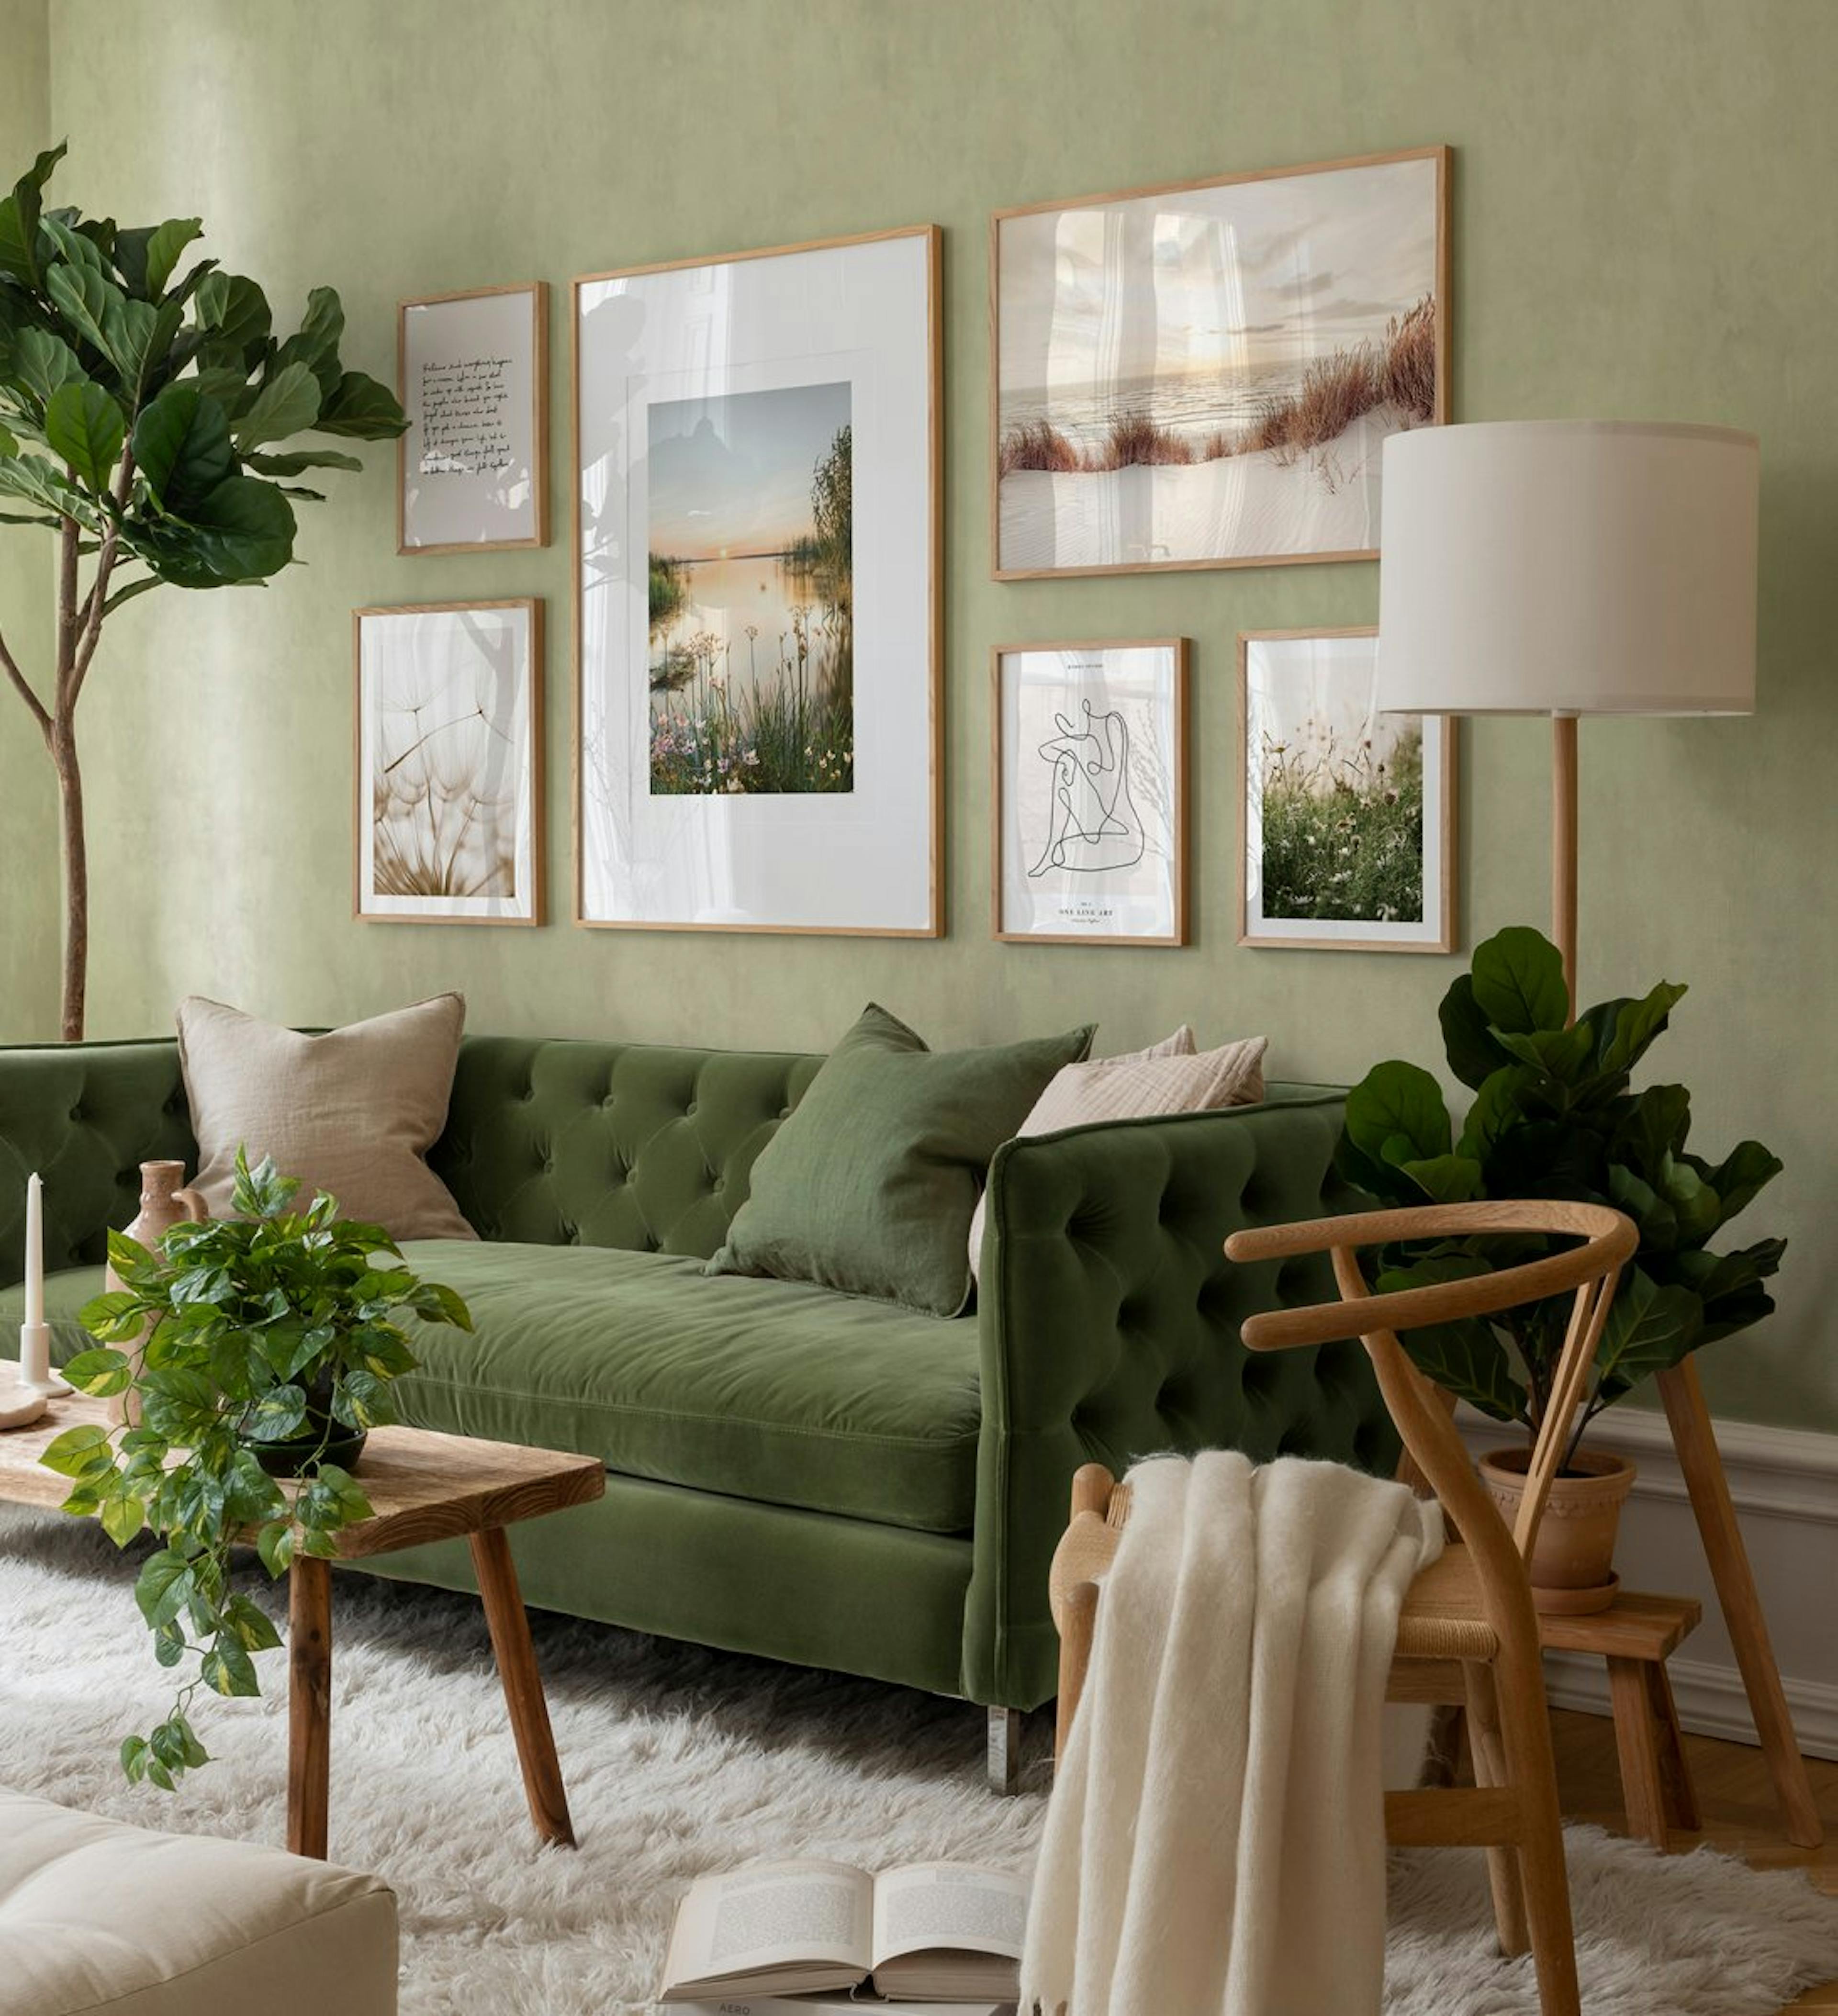 Décoration murale naturelle verte avec photographies et illustrations avec cadres en chêne pour le séjour